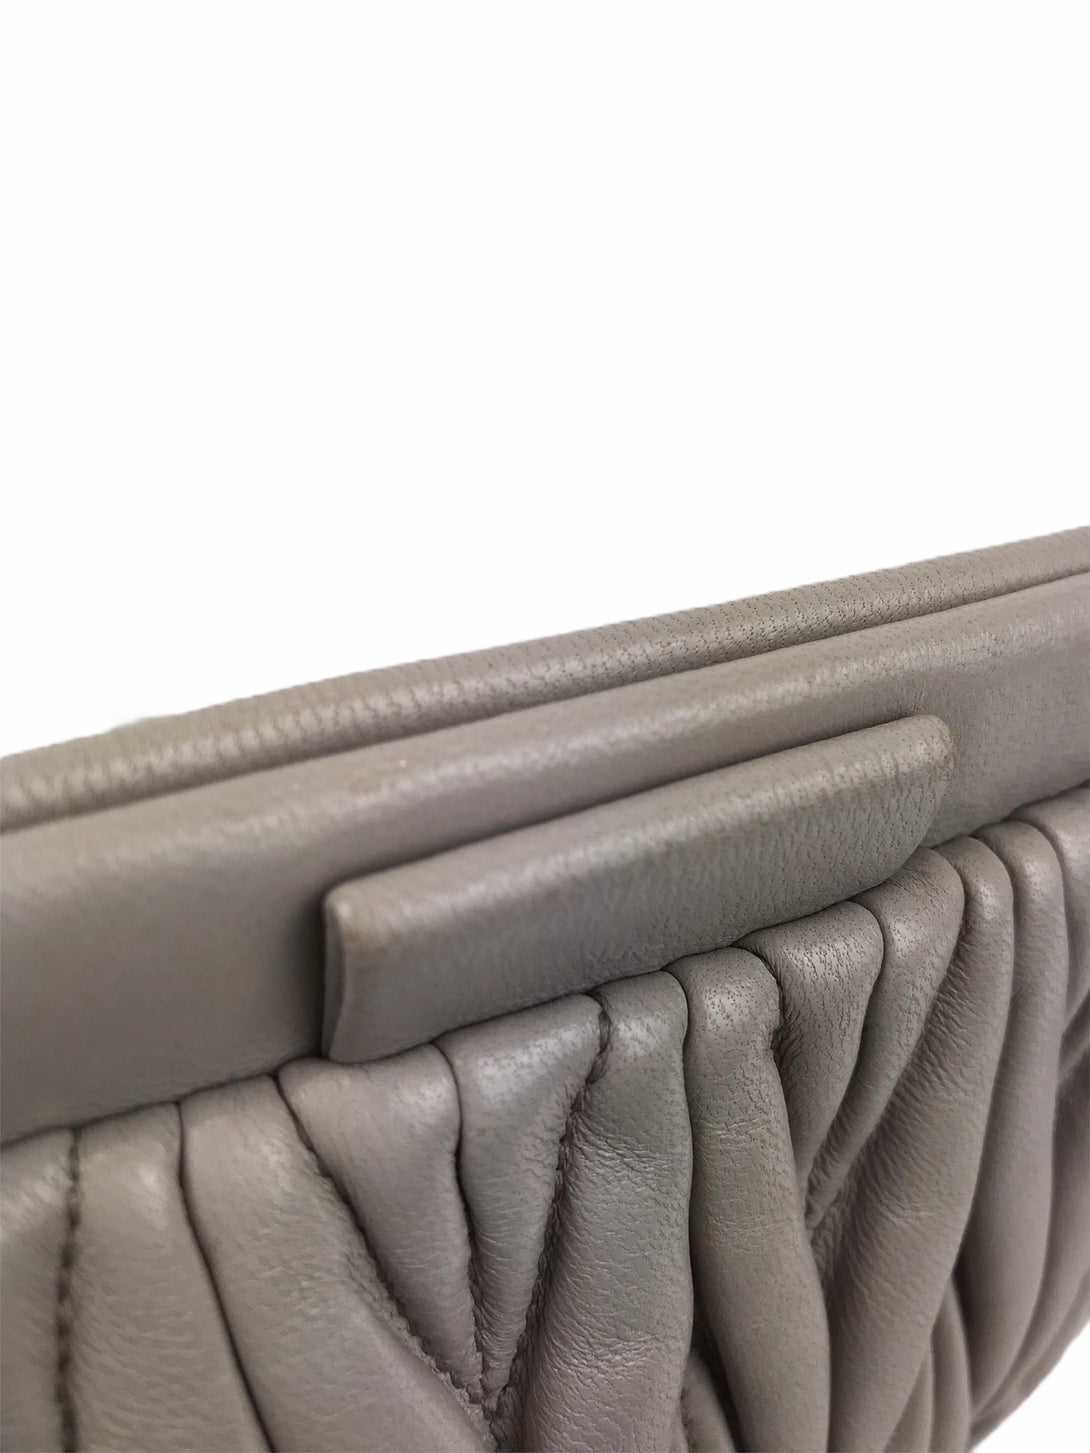 Miu Miu Pale Grey Matelasse Leather Crossbody - As Seen on Instagram 18/11/2020 - Siopaella Designer Exchange